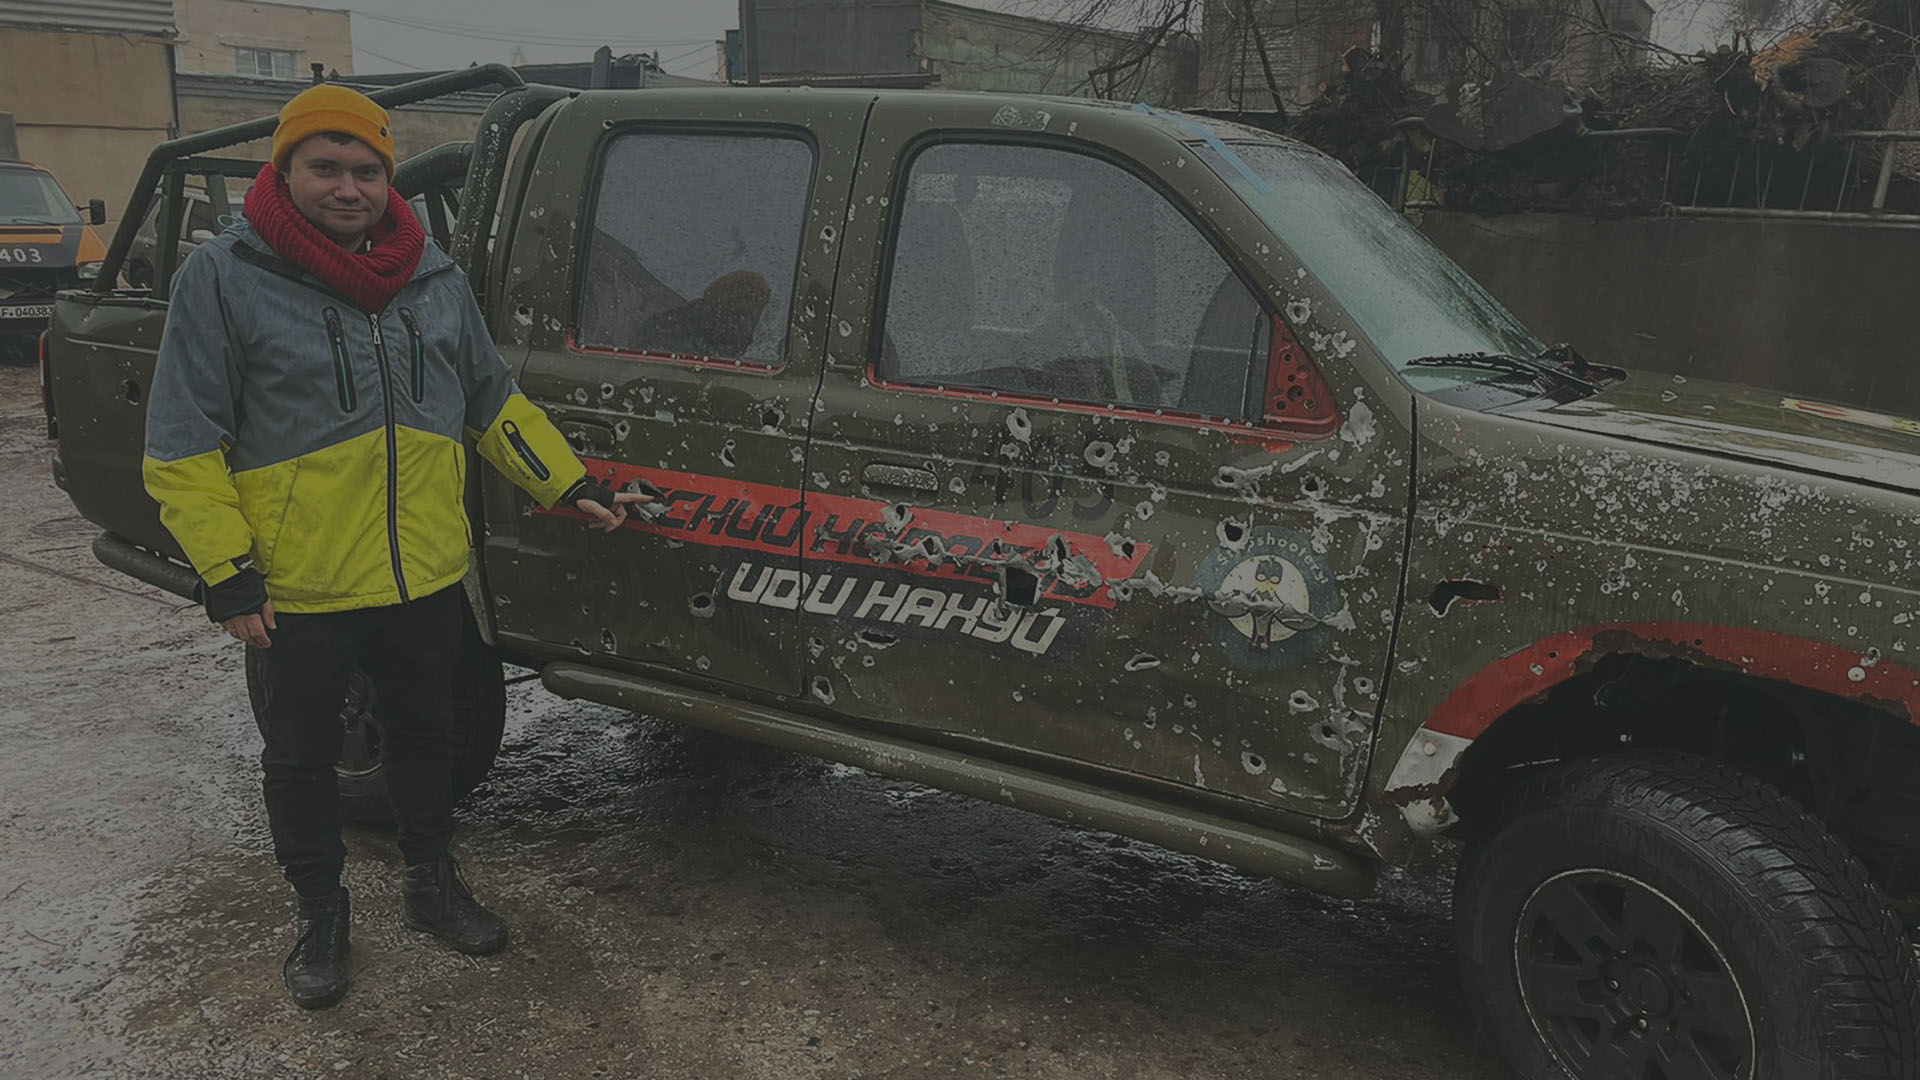 En bild av en beskjuten bil, som donerades till Car for Ukraine och användes på de Ukrainska frontlinjerna.